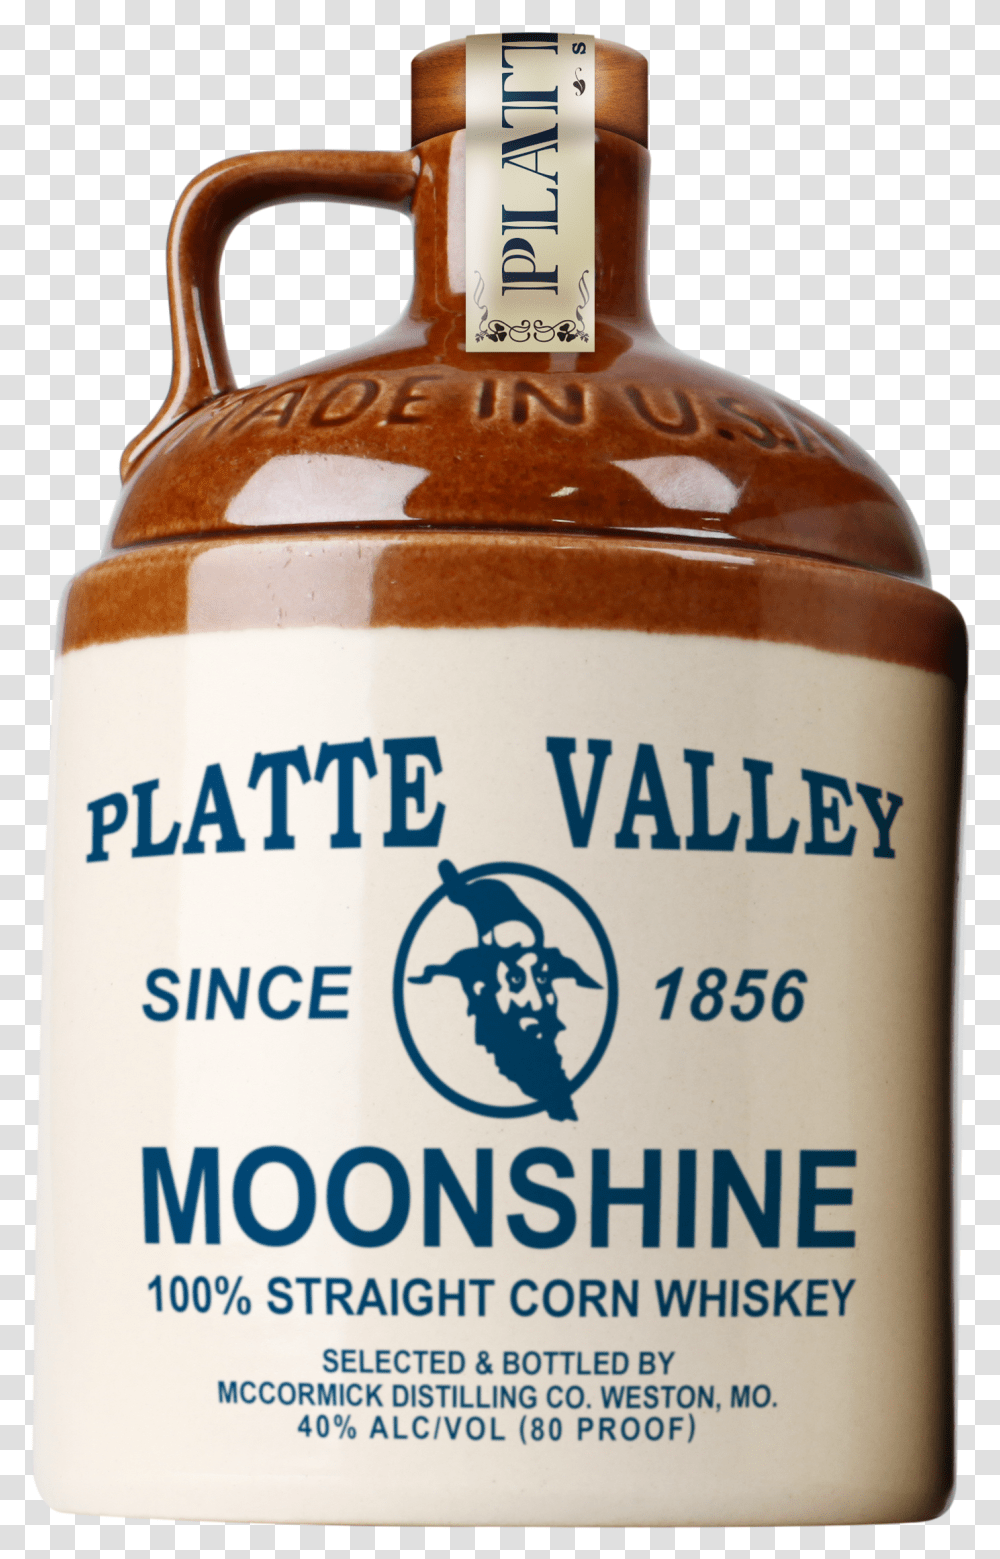 Moonshine Moonshine Whiskey Brand, Bottle, Beer, Alcohol, Beverage Transparent Png